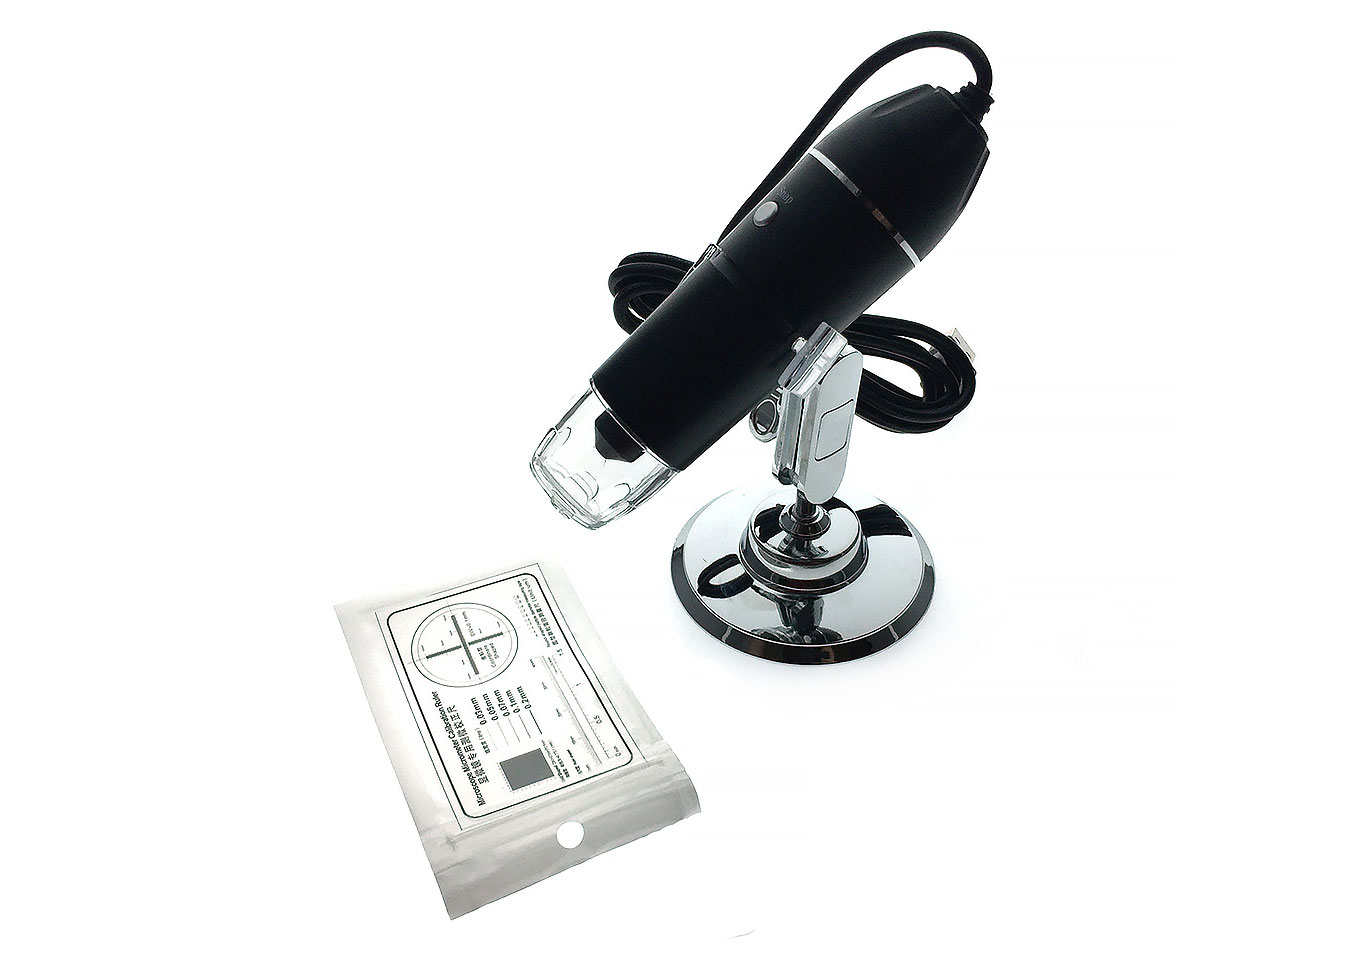 Микроскоп детский Espada USB-микроскоп цифровой U1600x 76505 микроскоп монокуляр espada usb g1200b с дисплеем 7 и подставкой